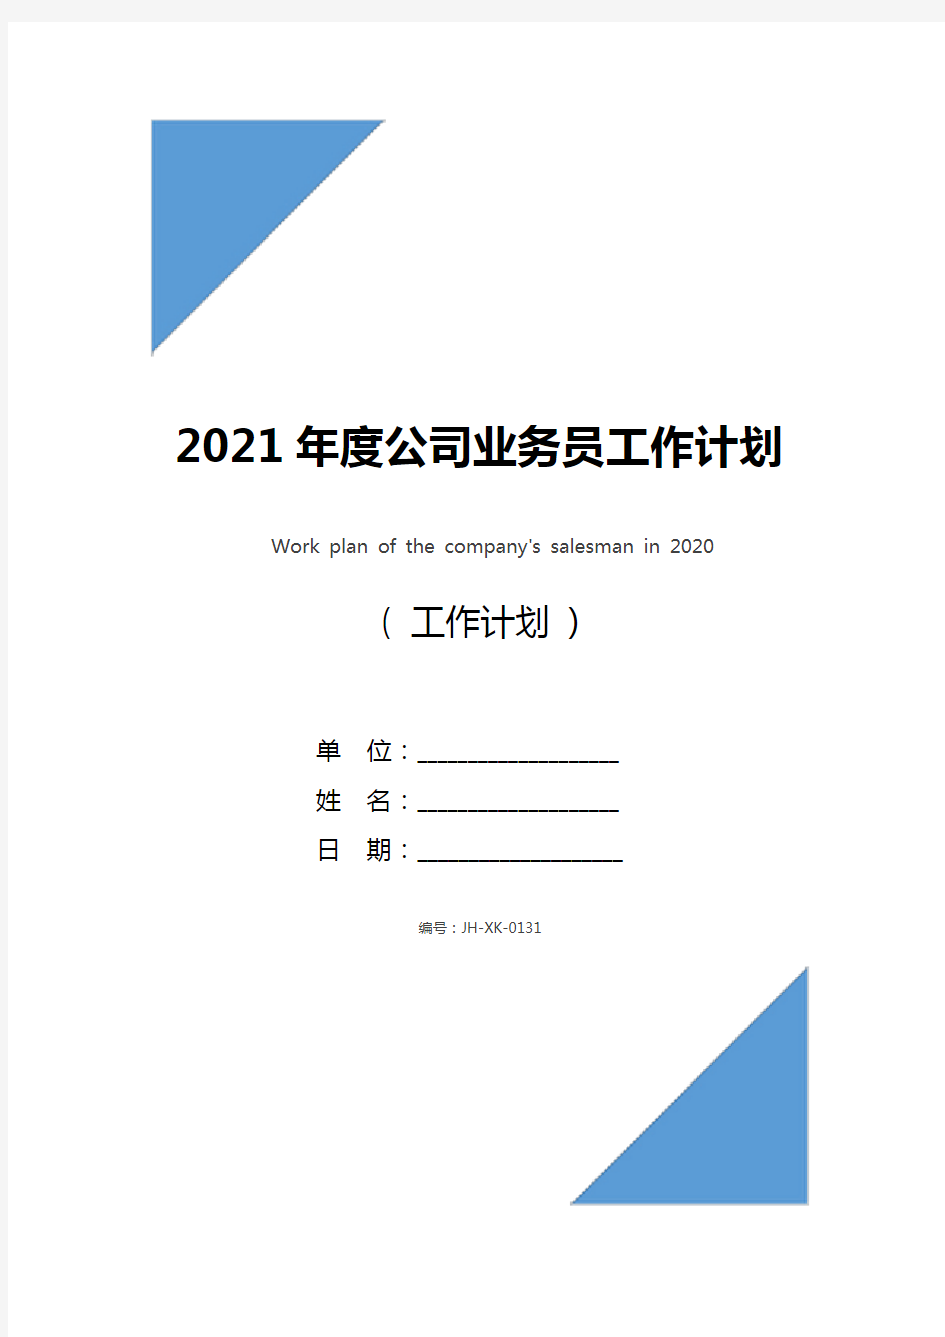 2021年度公司业务员工作计划(通用版)